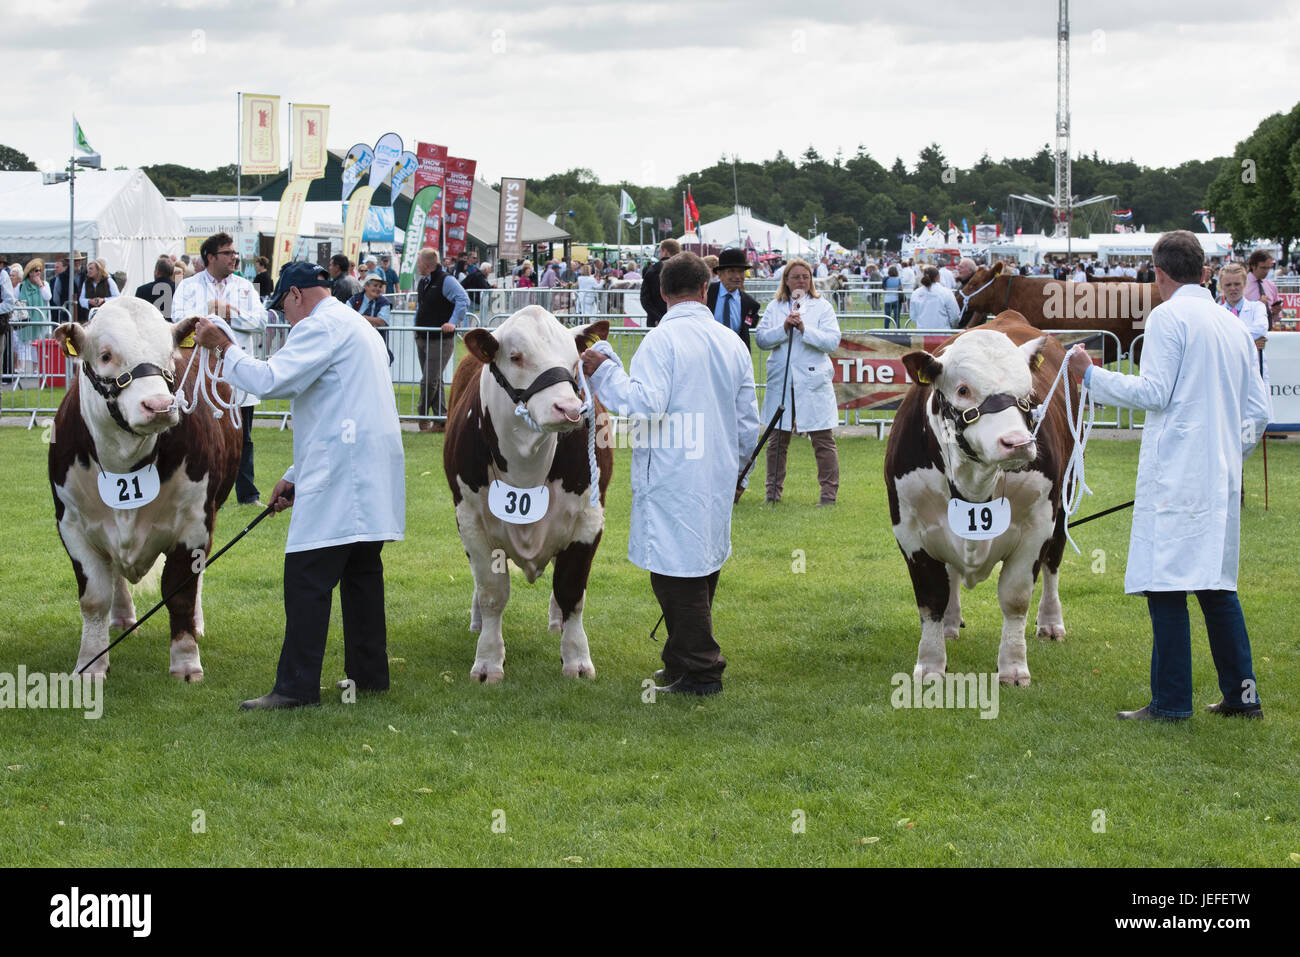 Taureau BOS. Hereford Bulls en spectacle lors d'un salon agricole. ROYAUME-UNI Banque D'Images